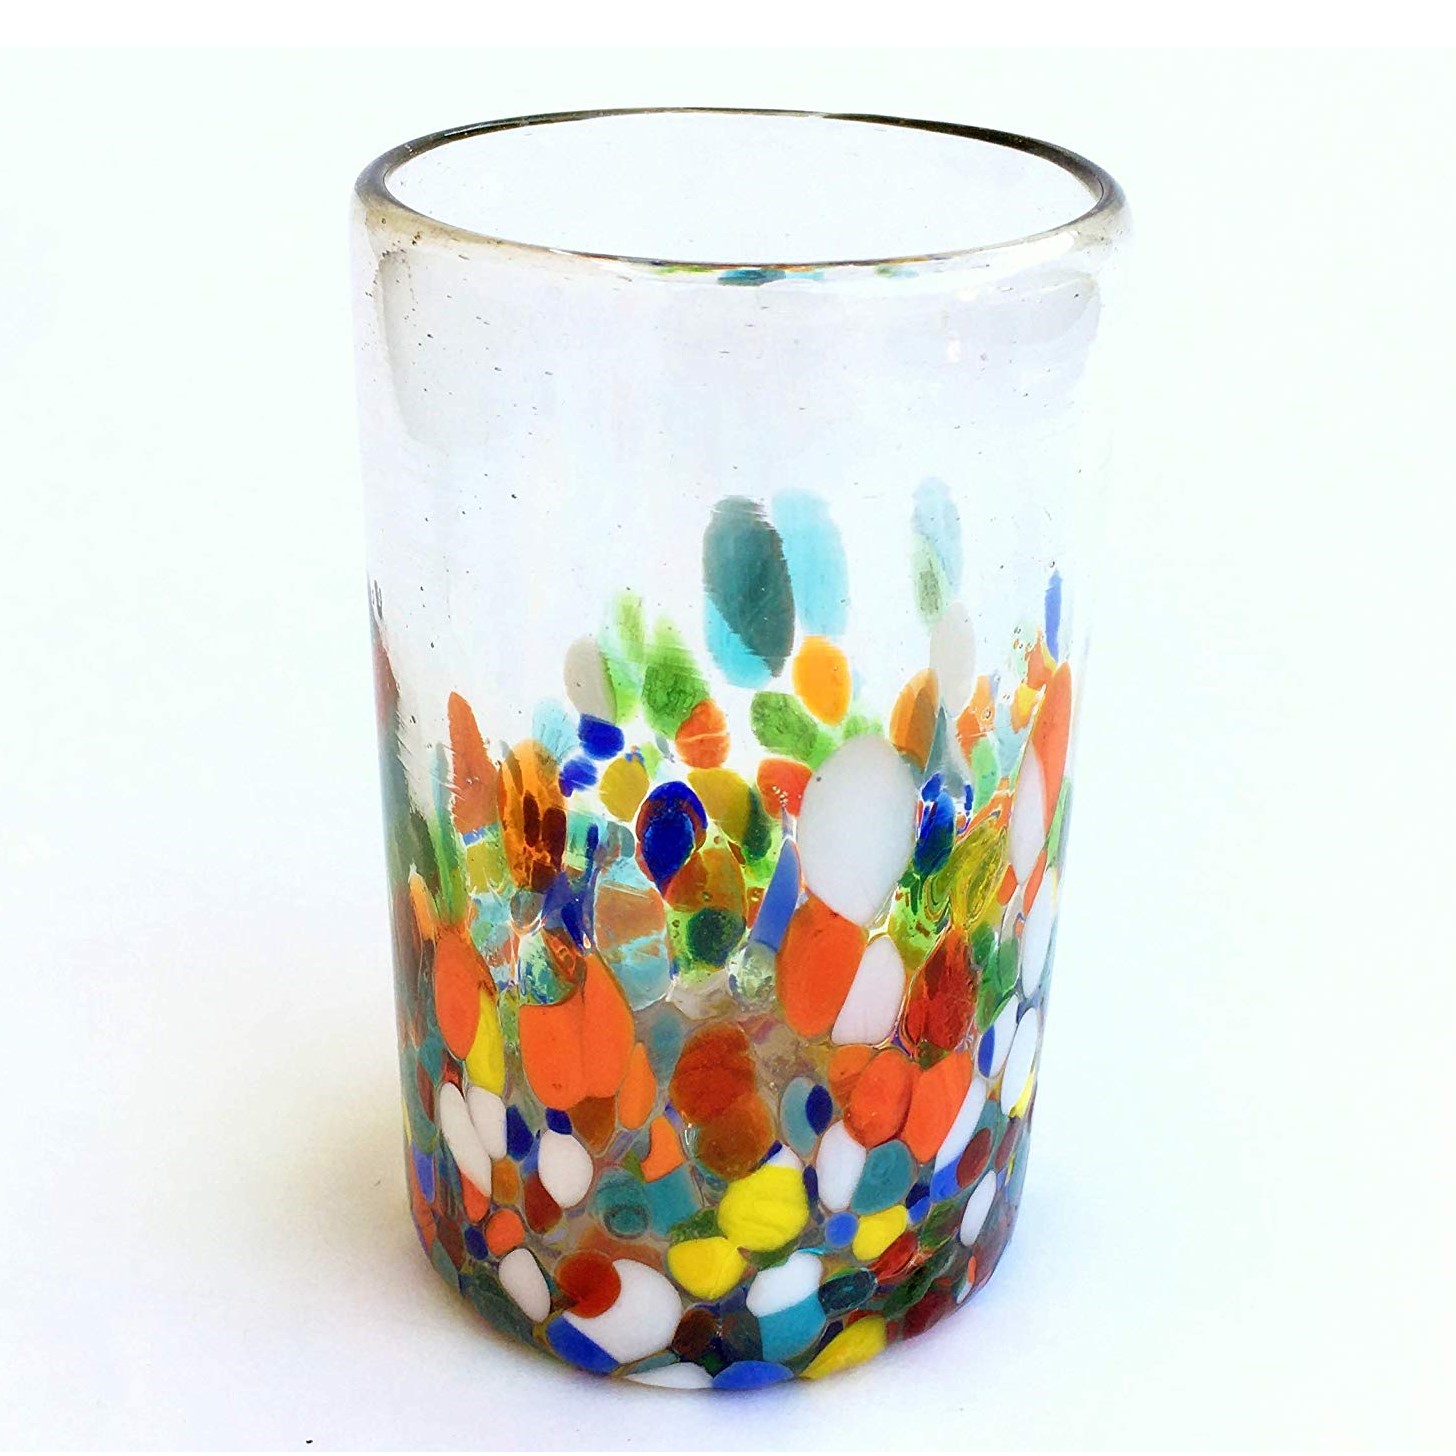 Vasos de Vidrio Soplado al Mayoreo / vasos grandes 'Cristal & Confeti' / Deje entrar a la primavera en su casa con éste colorido juego de vasos. El decorado con vidrio multicolor los hace resaltar en cualquier lugar.